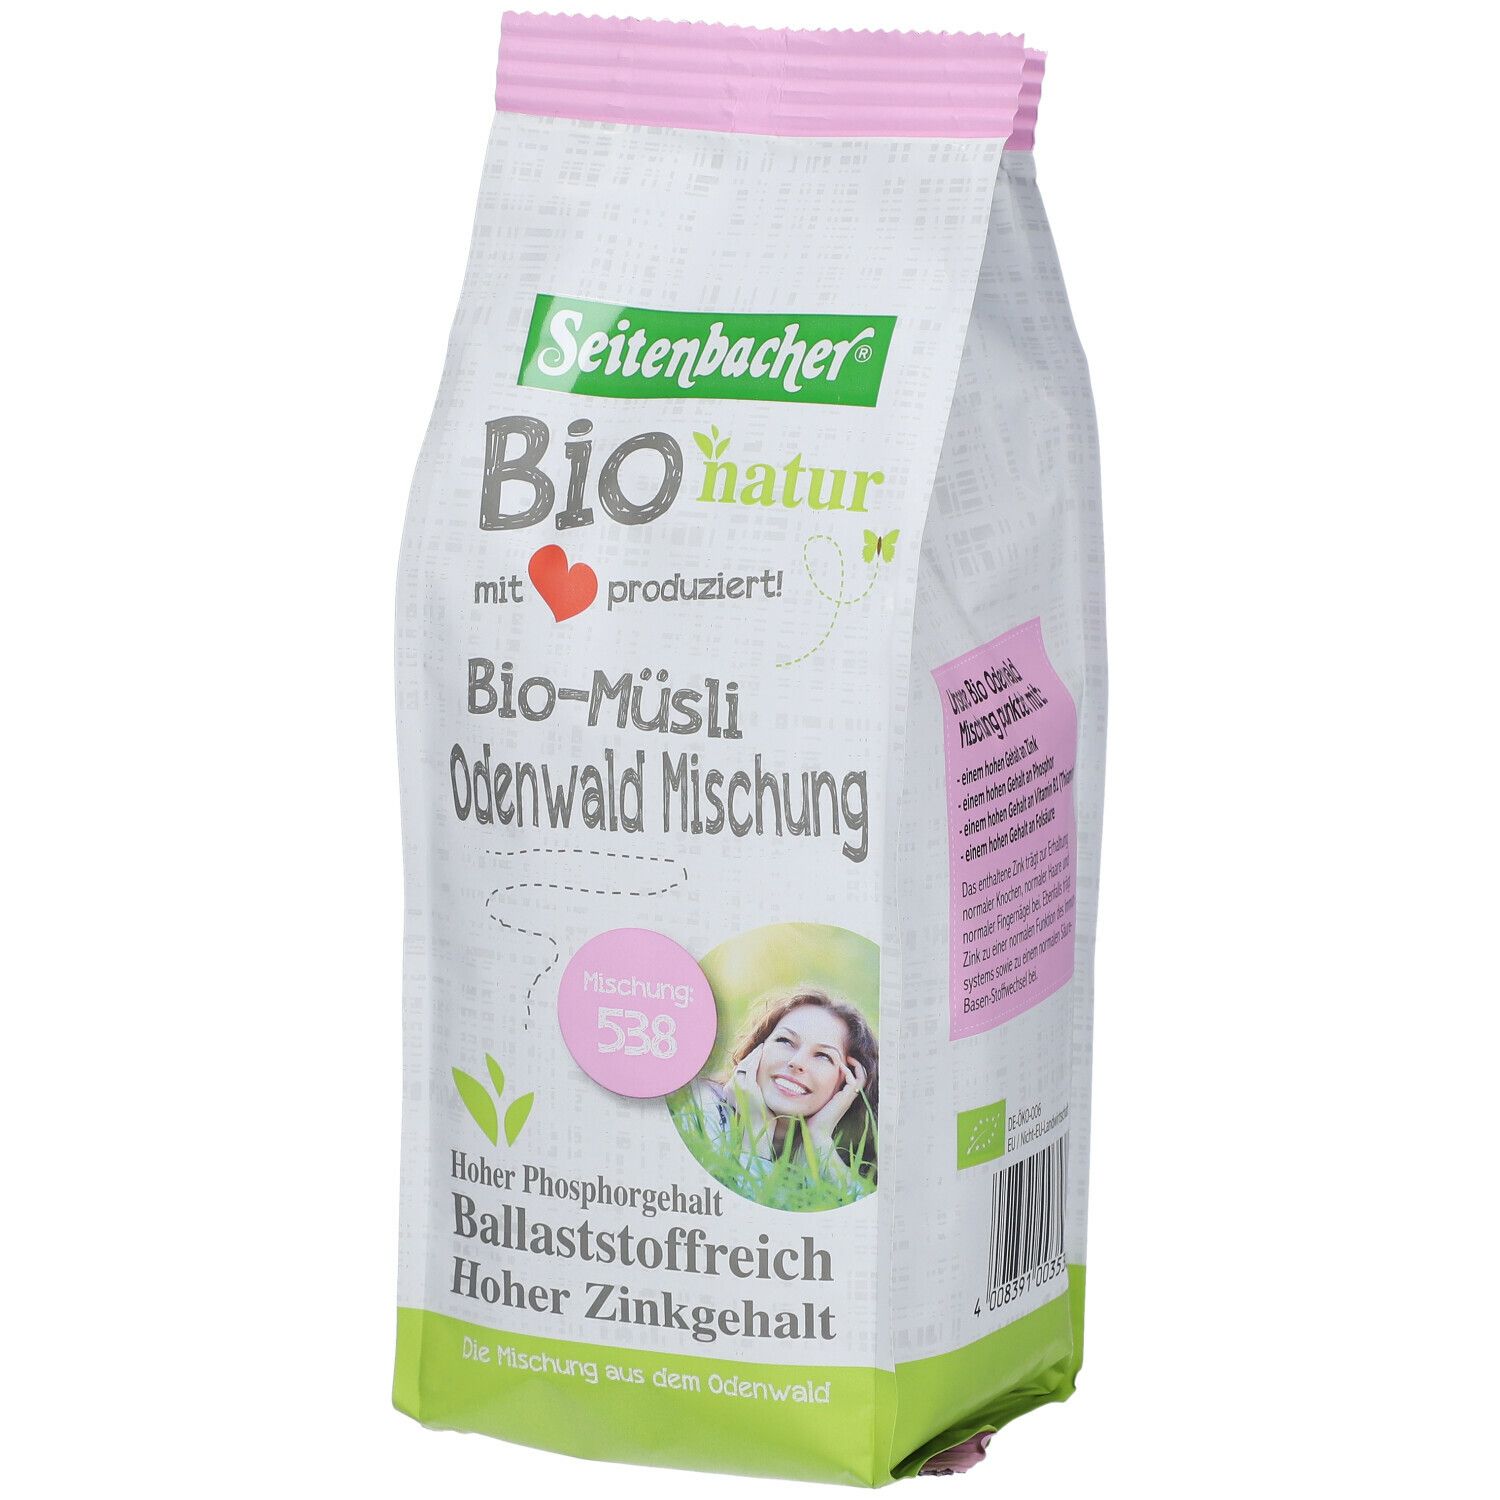 Seitenbacher® Bio natur Bio Müsli Odenwald mélange